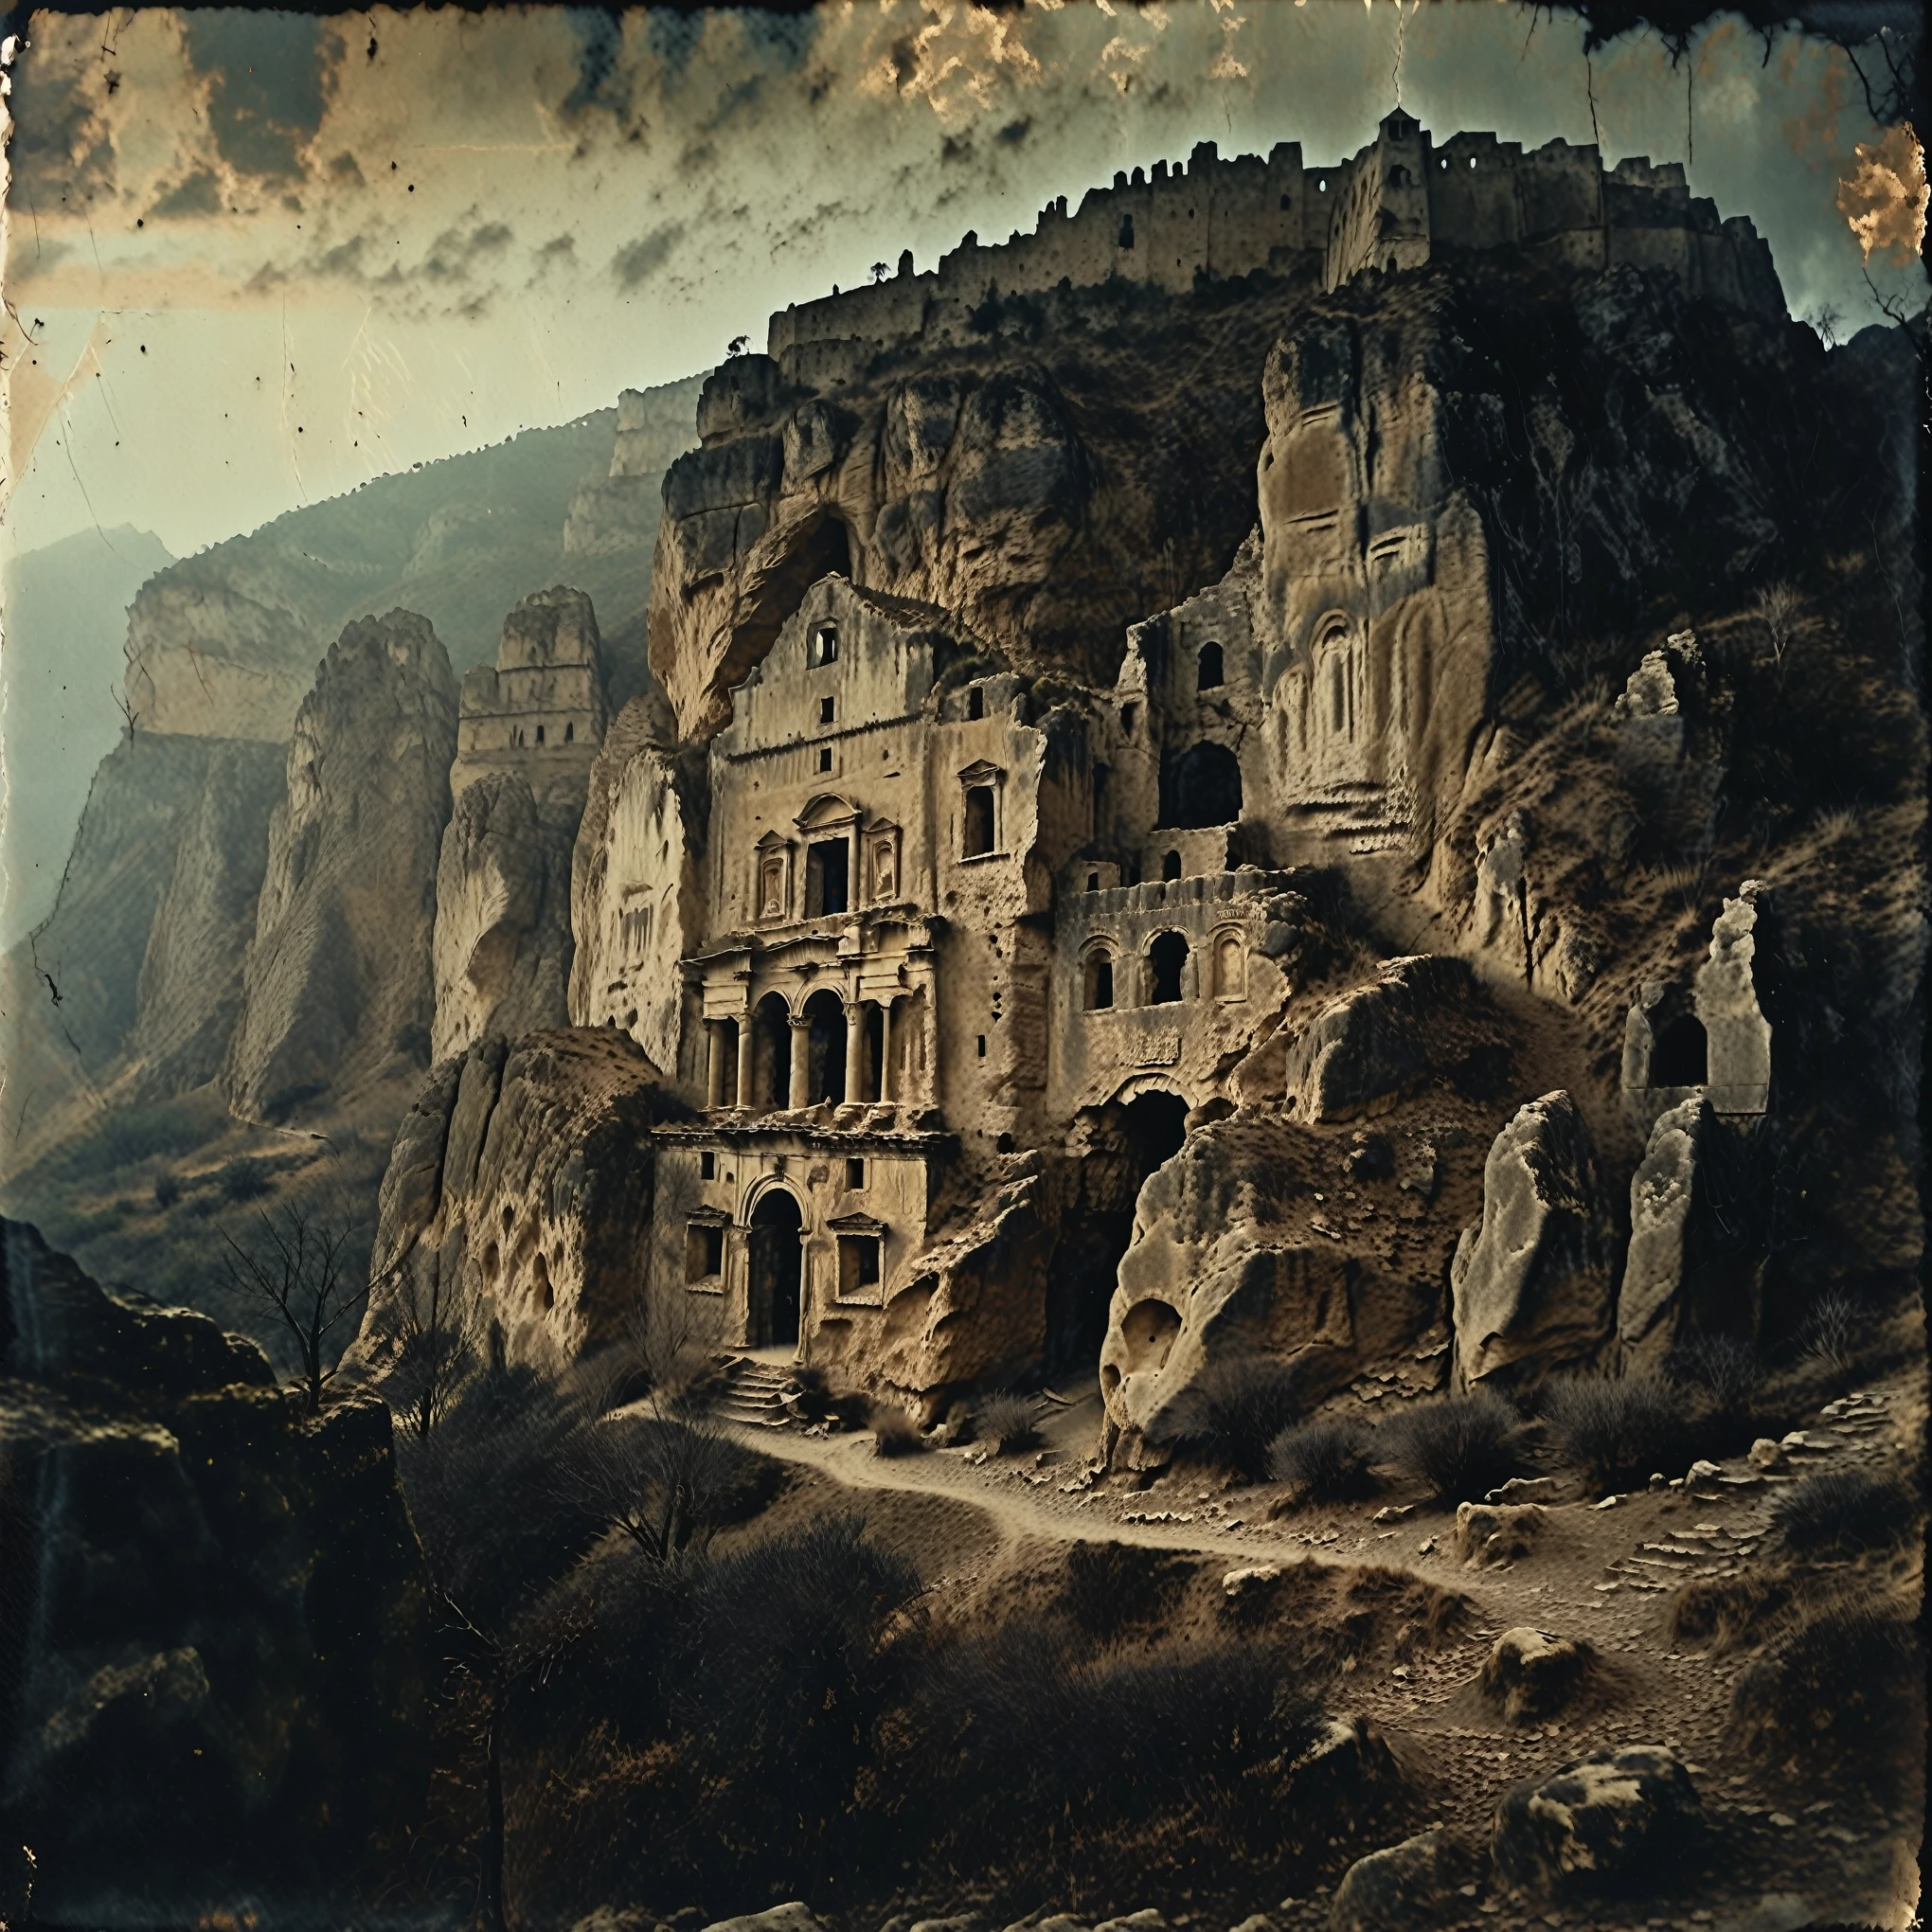 espeluznante escena de terror, 35mm de época, foto antigua granulada oscura, Gigantesco castillo monolítico de piedra mediterránea grabado en una formación de acantilado de montaña de roca gigante, Olimpo, vasto paisaje